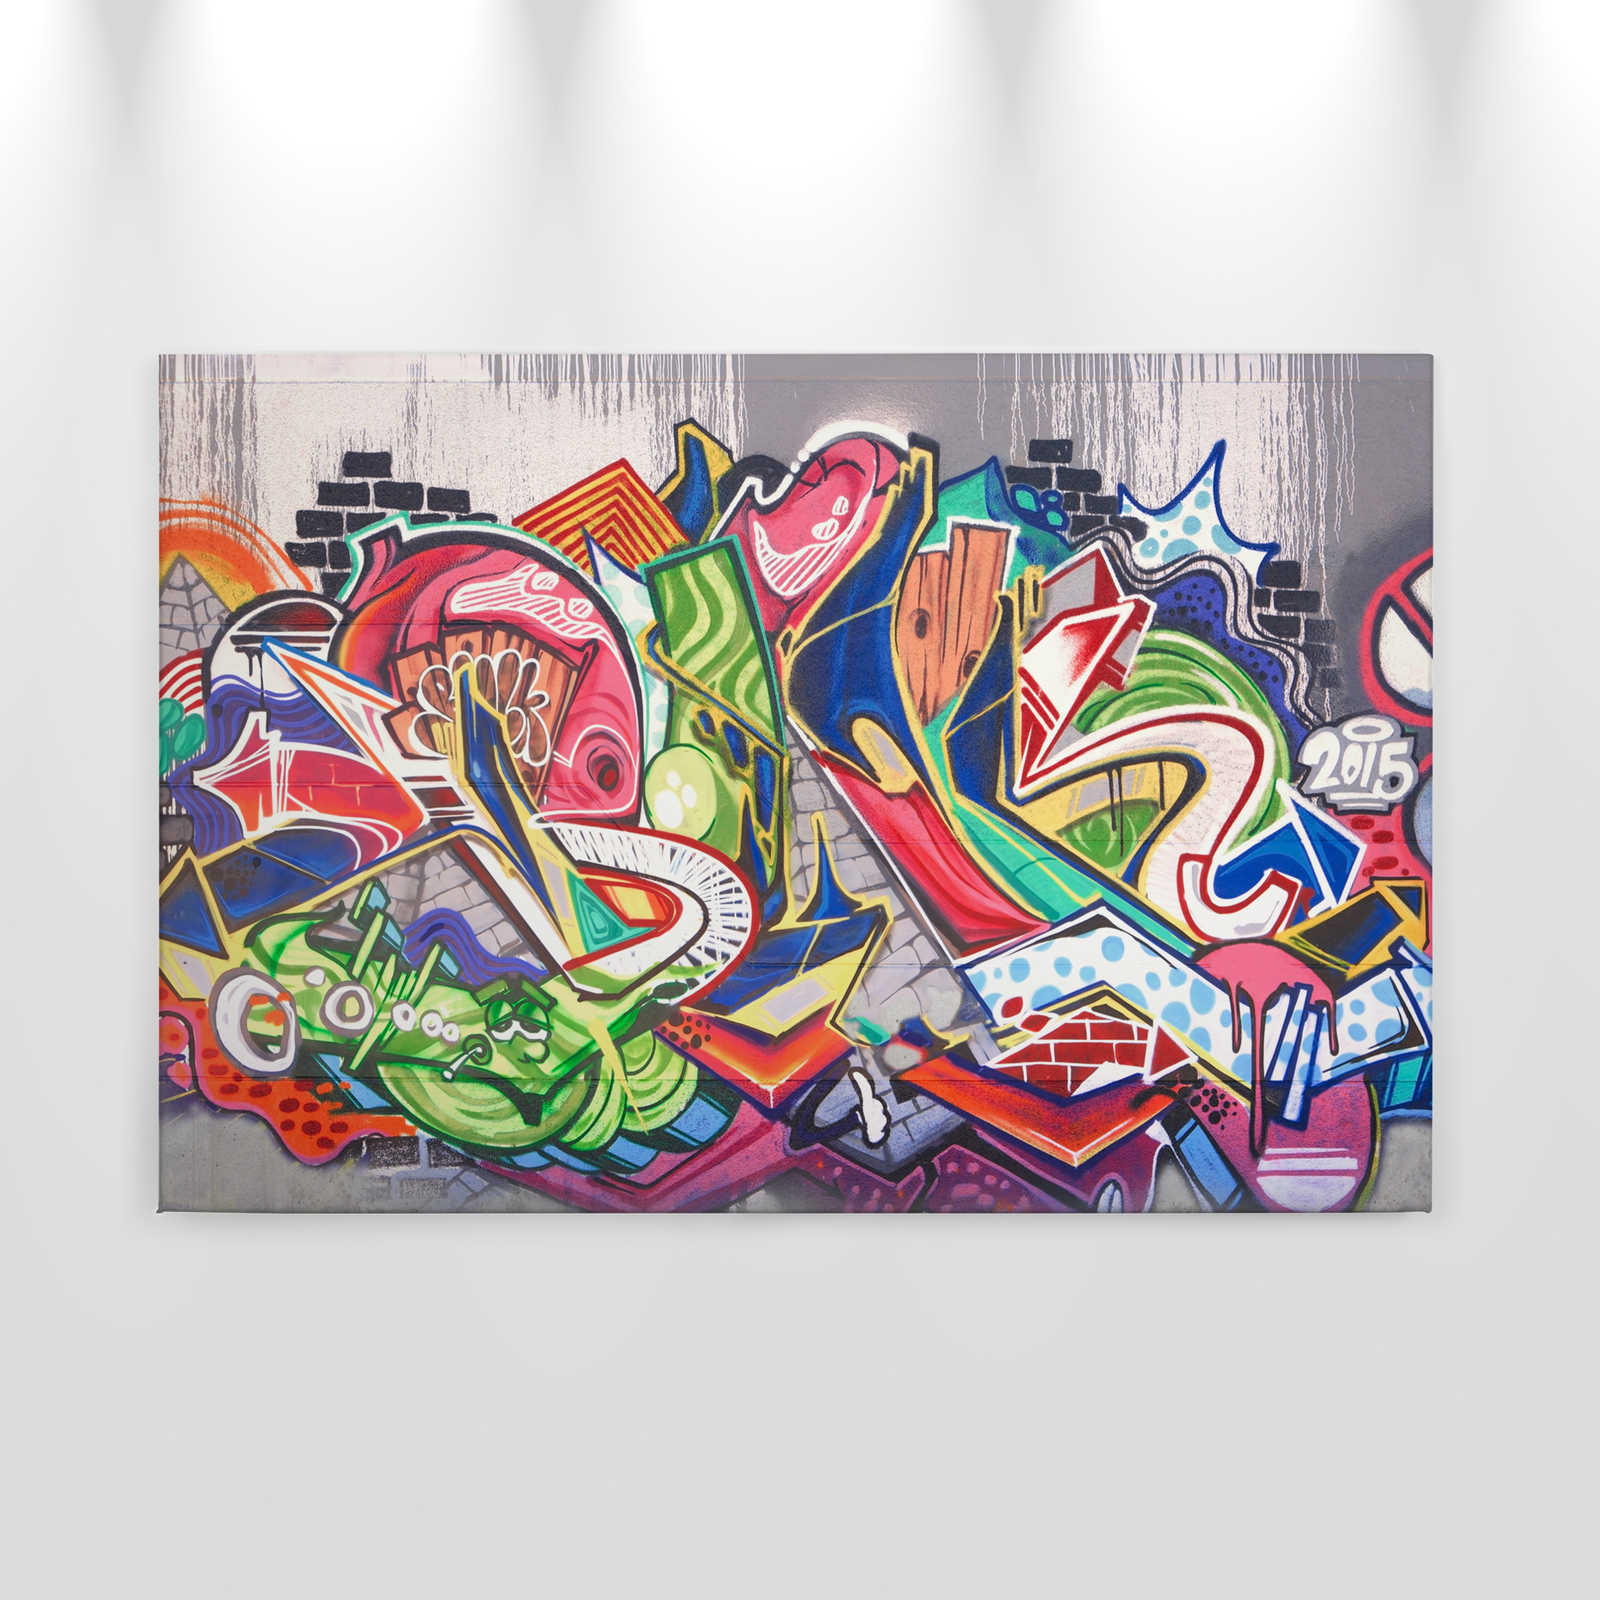             Lienzo de pared Graffiti urbano - 0,90 m x 0,60 m
        